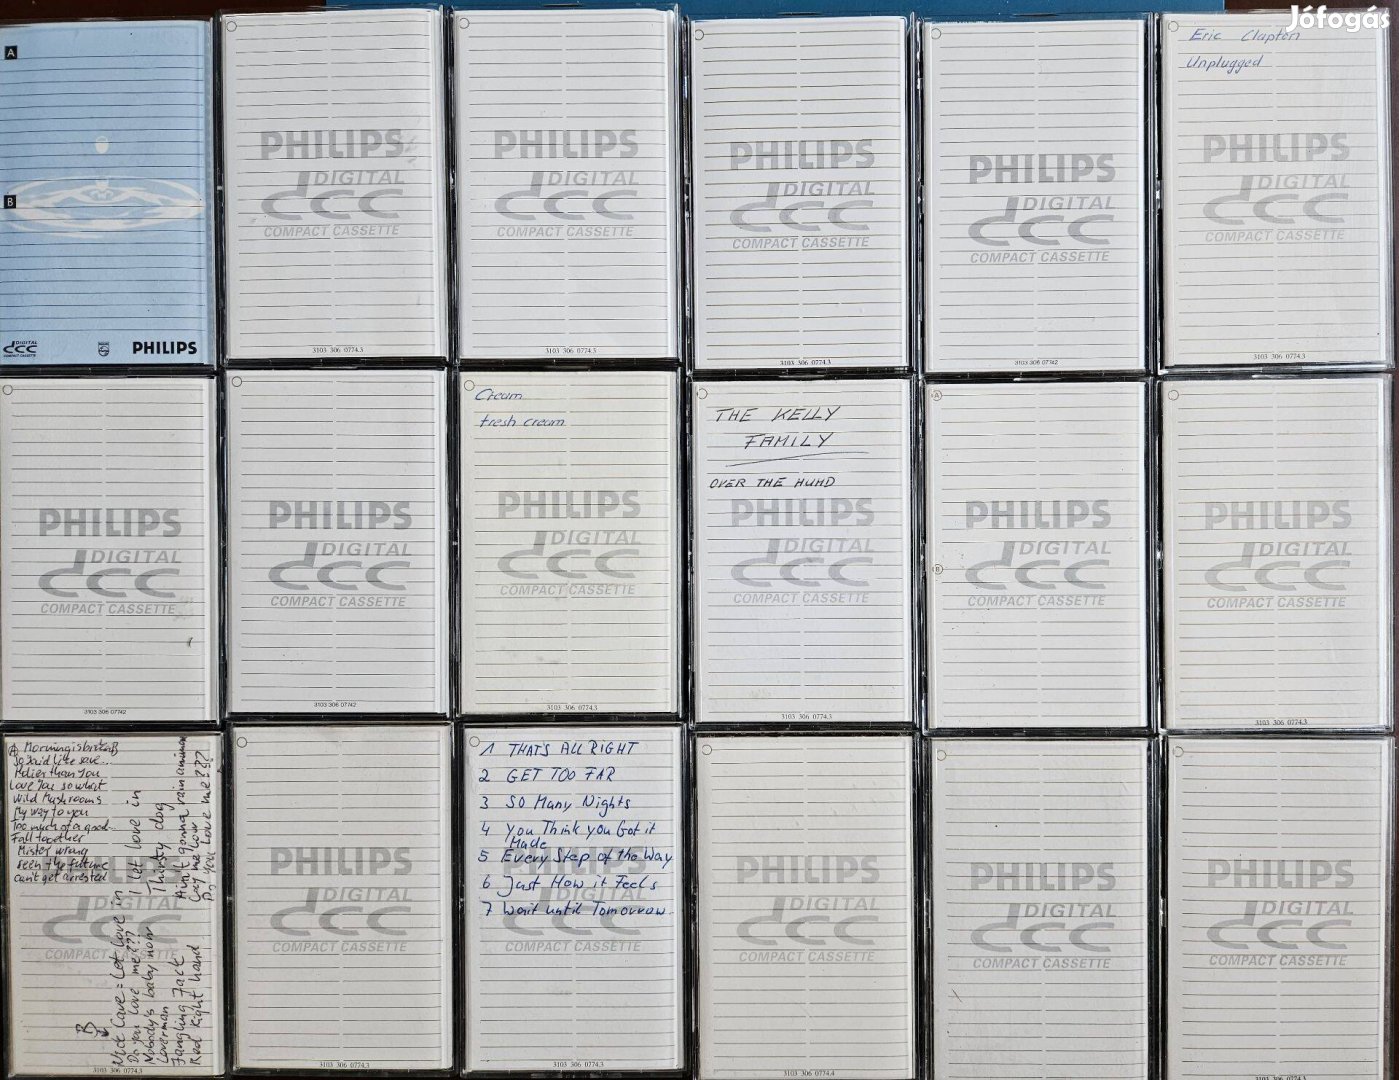 Philips DCC kazetták